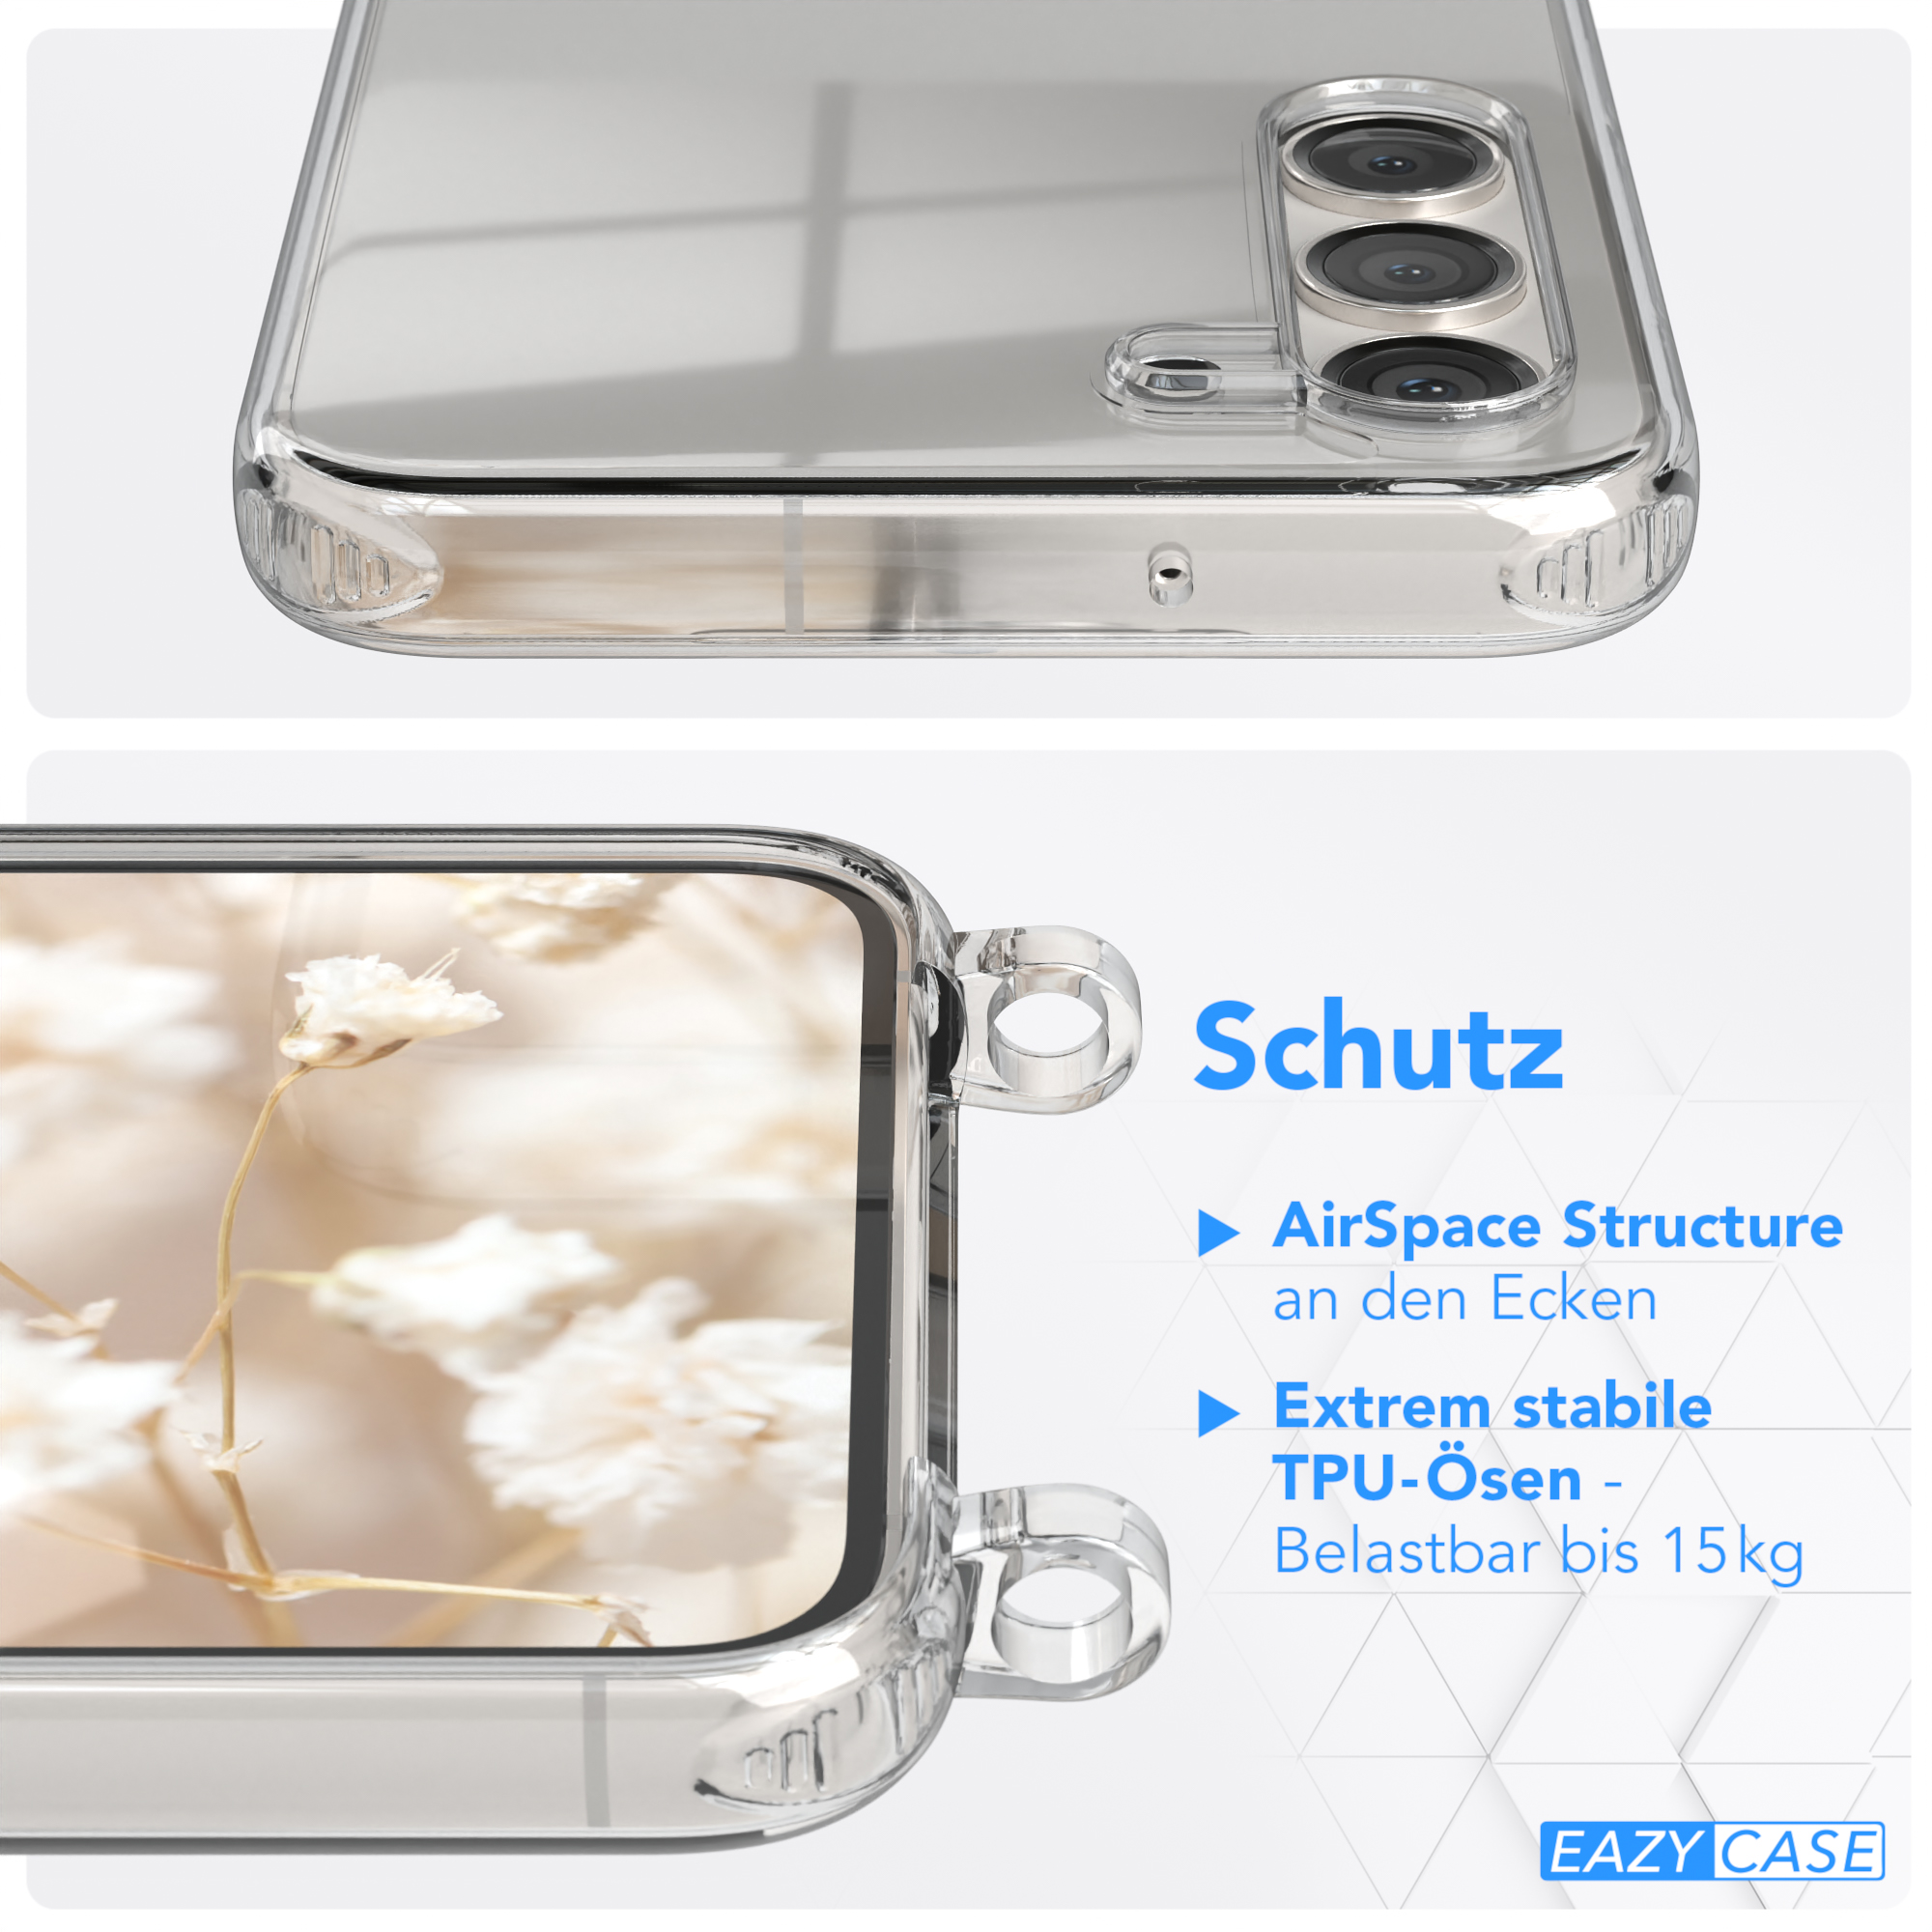 Grau Kordel Galaxy EAZY S23 Samsung, CASE mit Plus, Handyhülle / Schwarz Style, Umhängetasche, Transparente Boho